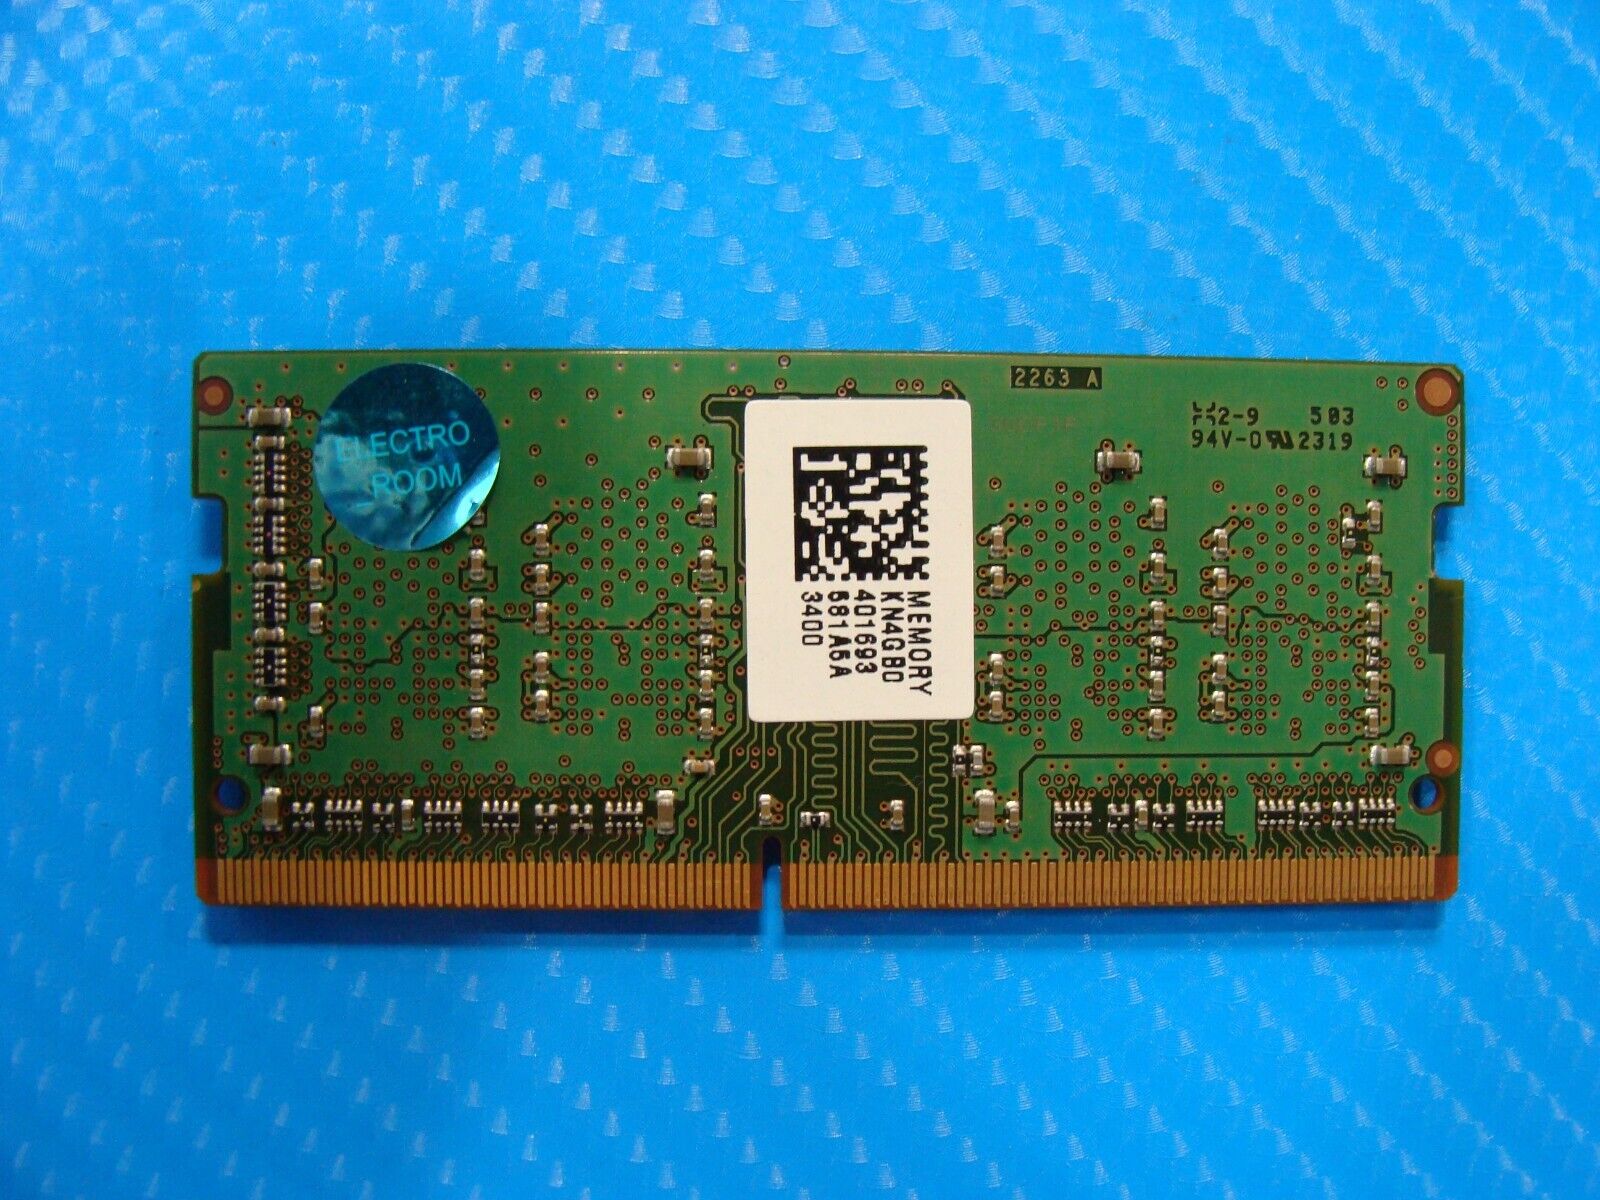 Acer A515-43-R19L Micron 4GB PC4-2666V Memory RAM SO-DIMM MTA4ATF51264HZ-2G6E1